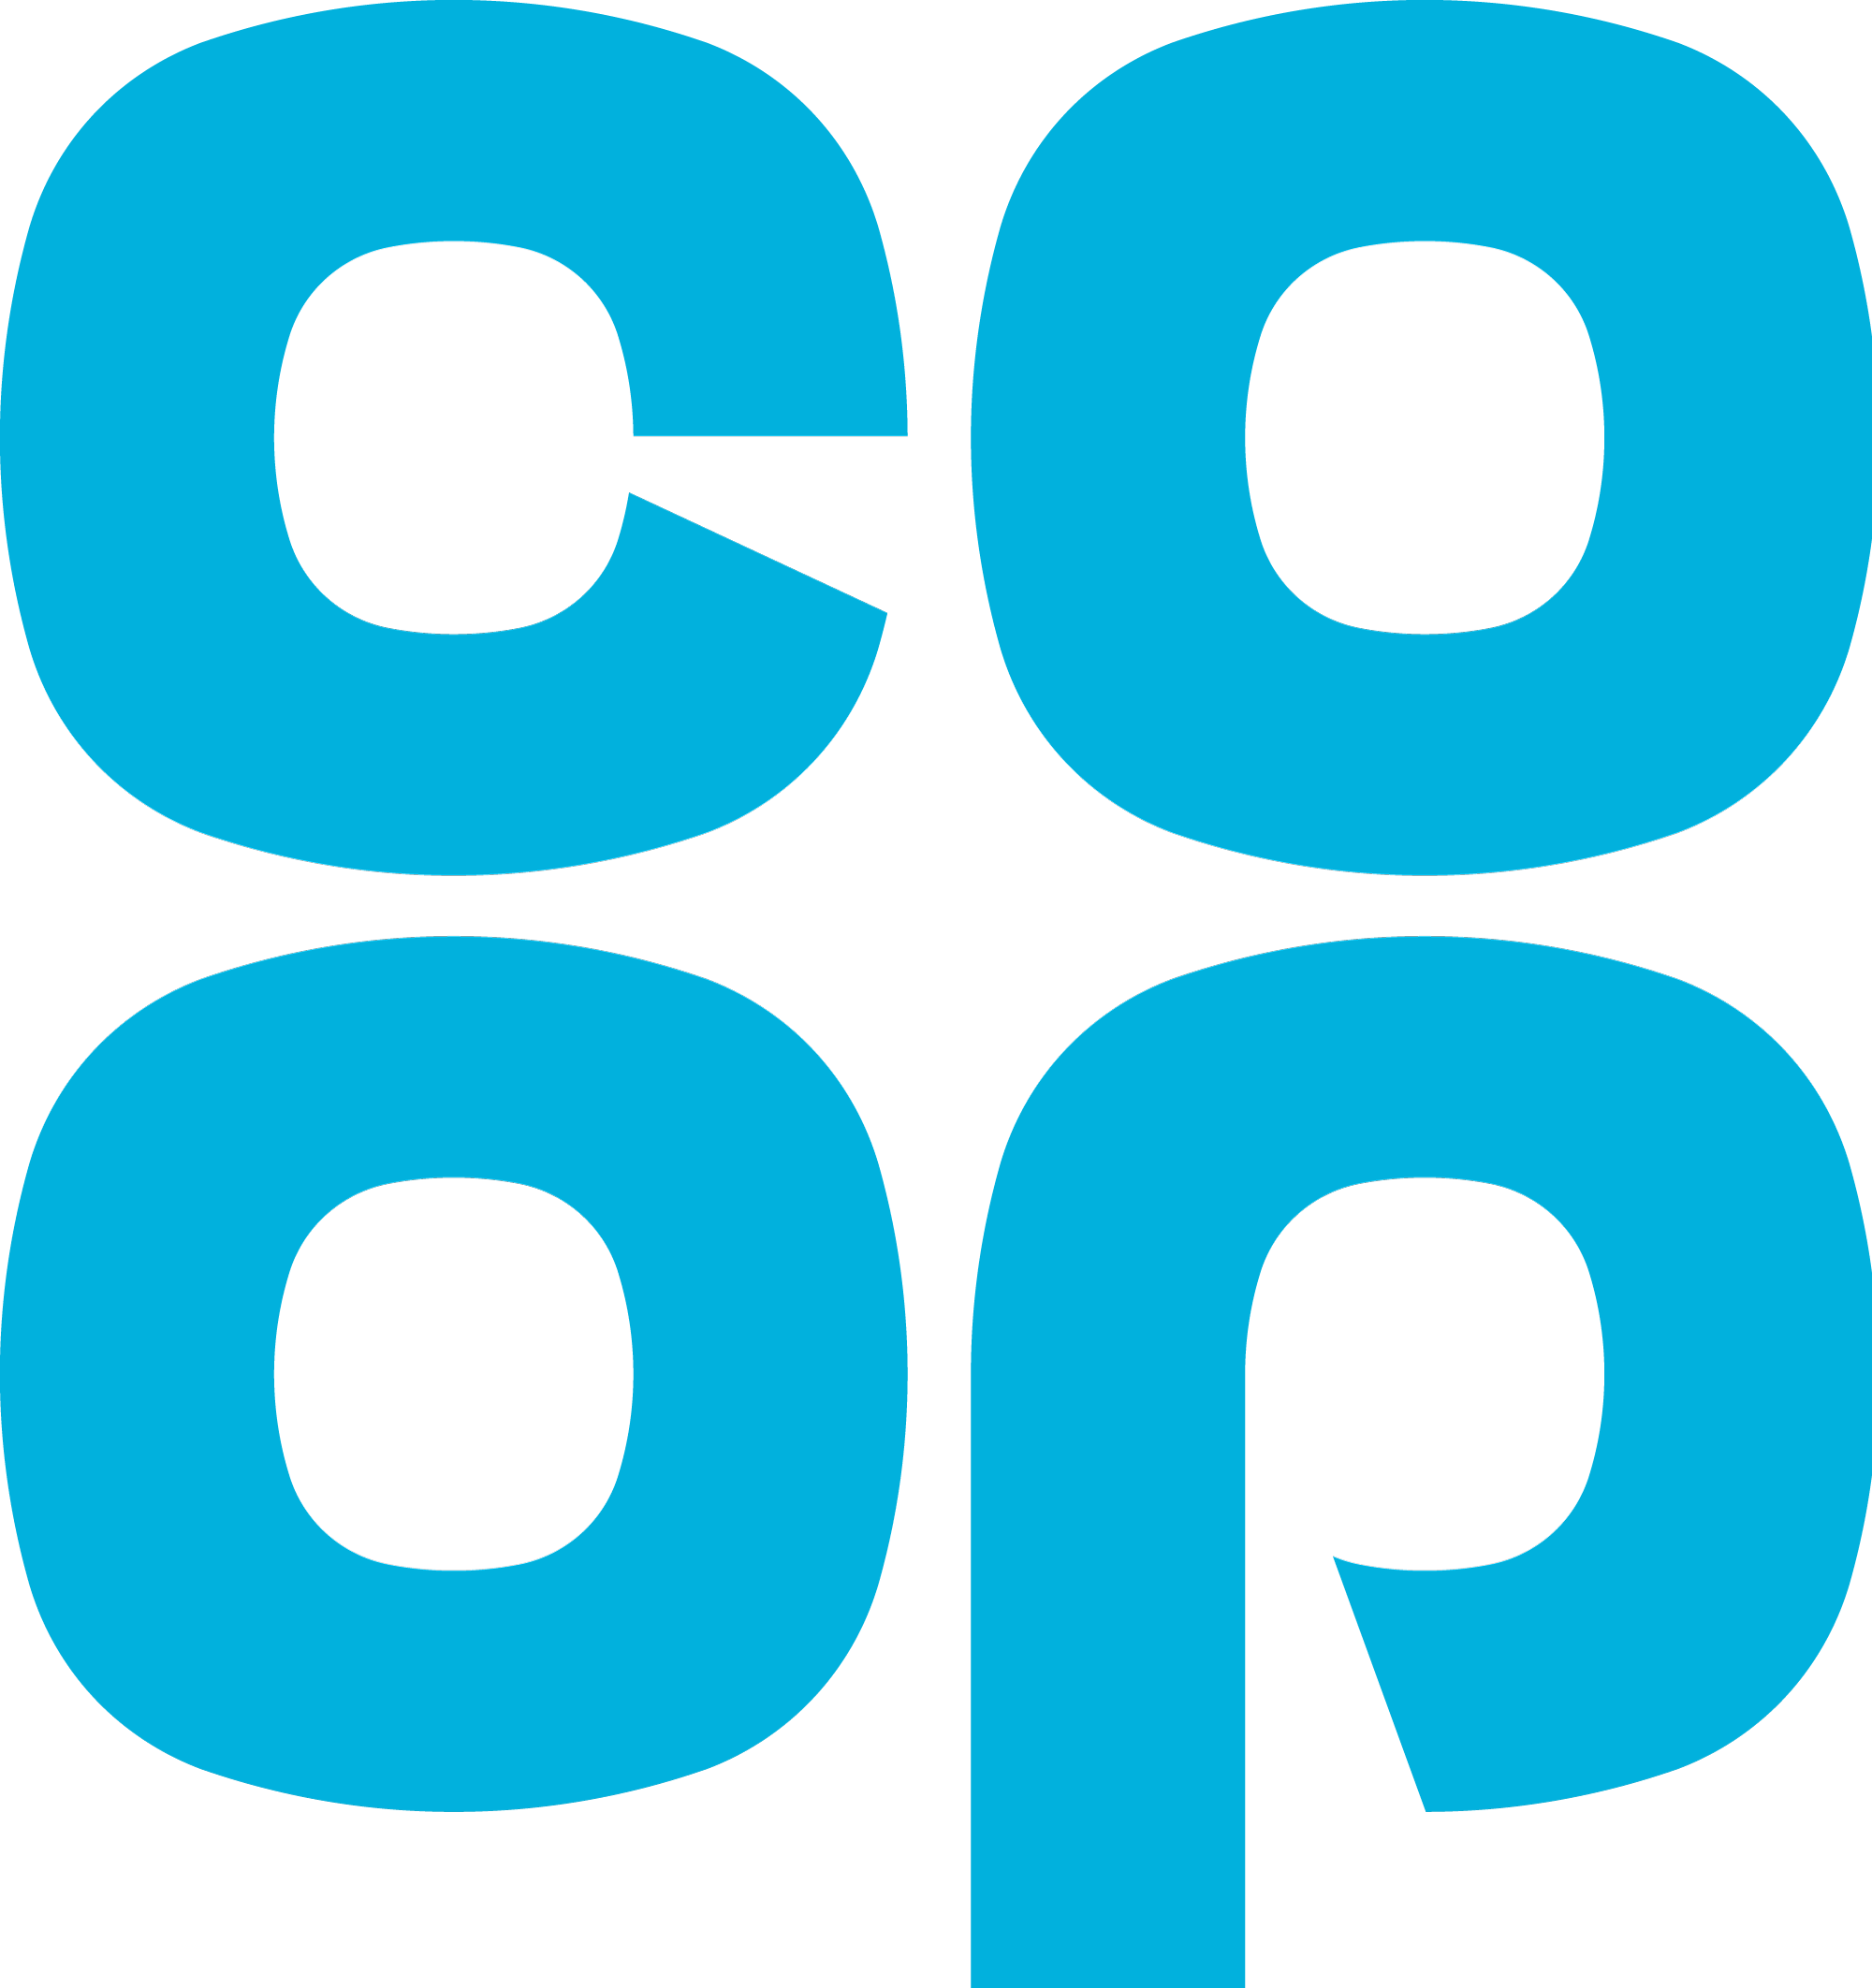 20, 21 May 2016 - Co Op Vector Logo (2000x2124)